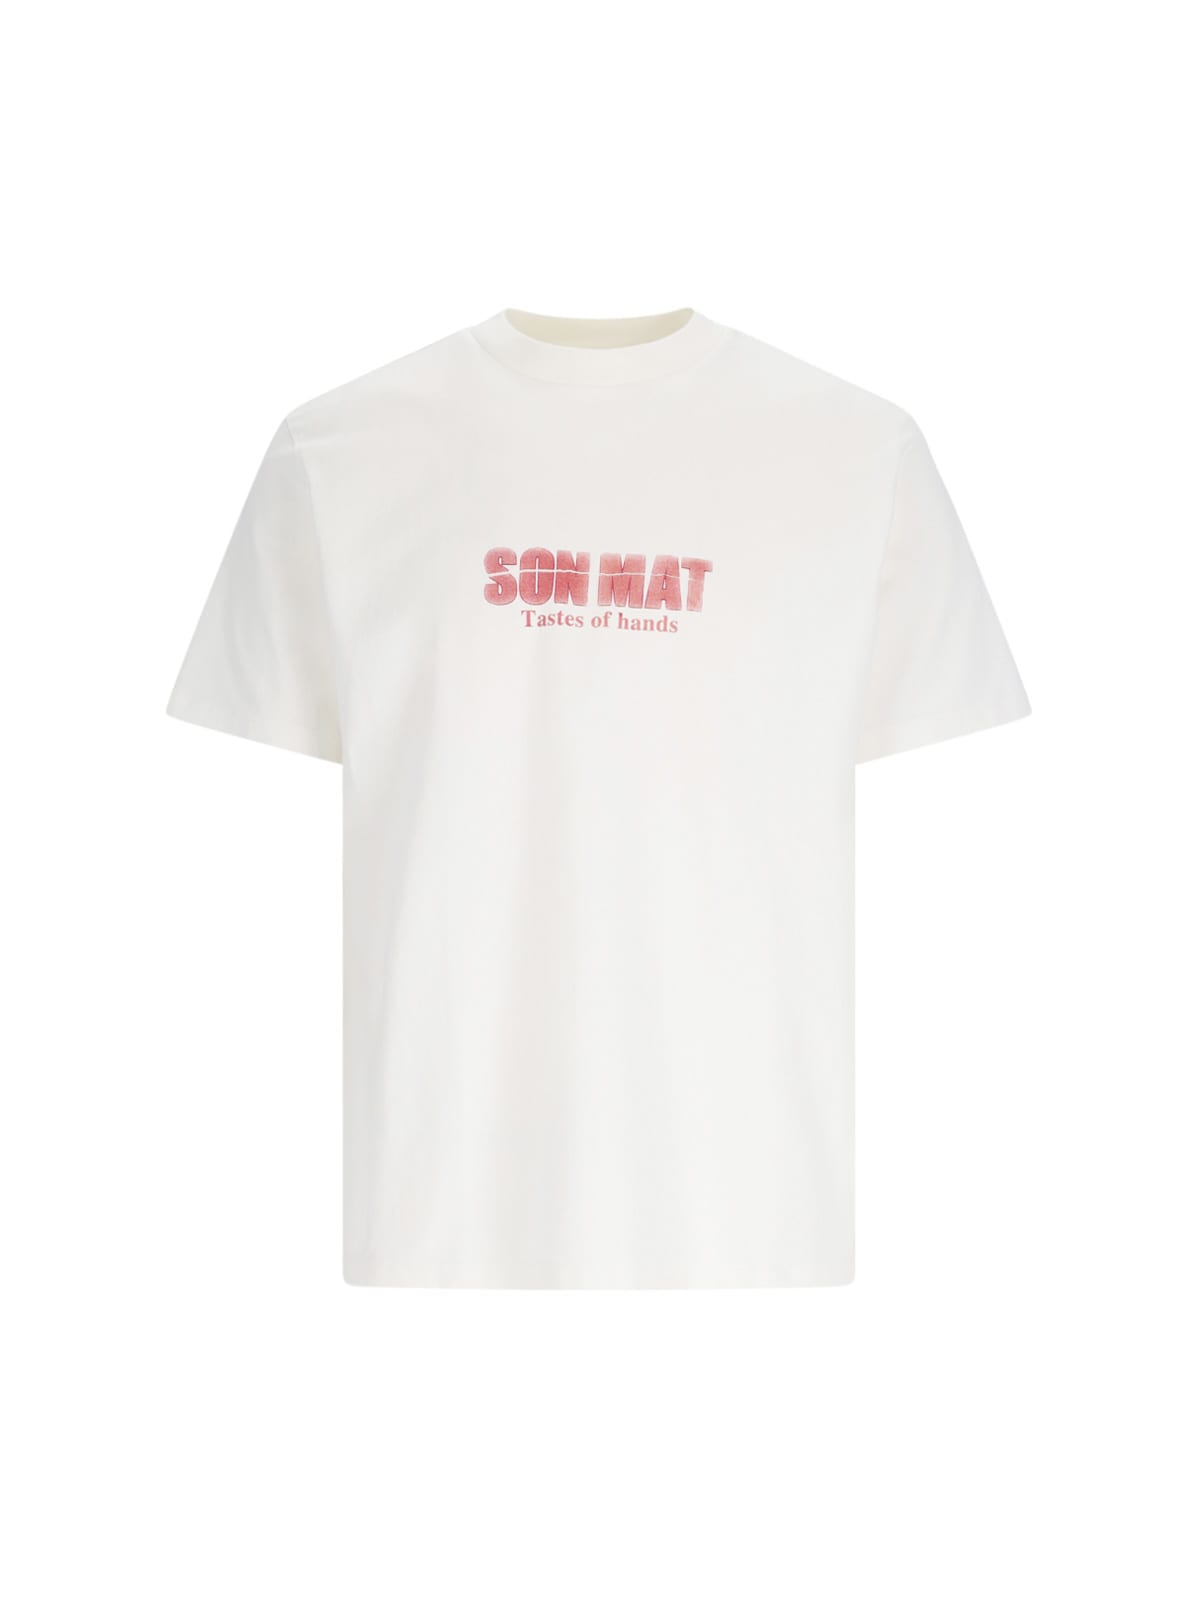 Our Legacy Son-mat Print T-shirt In Son Mat Print